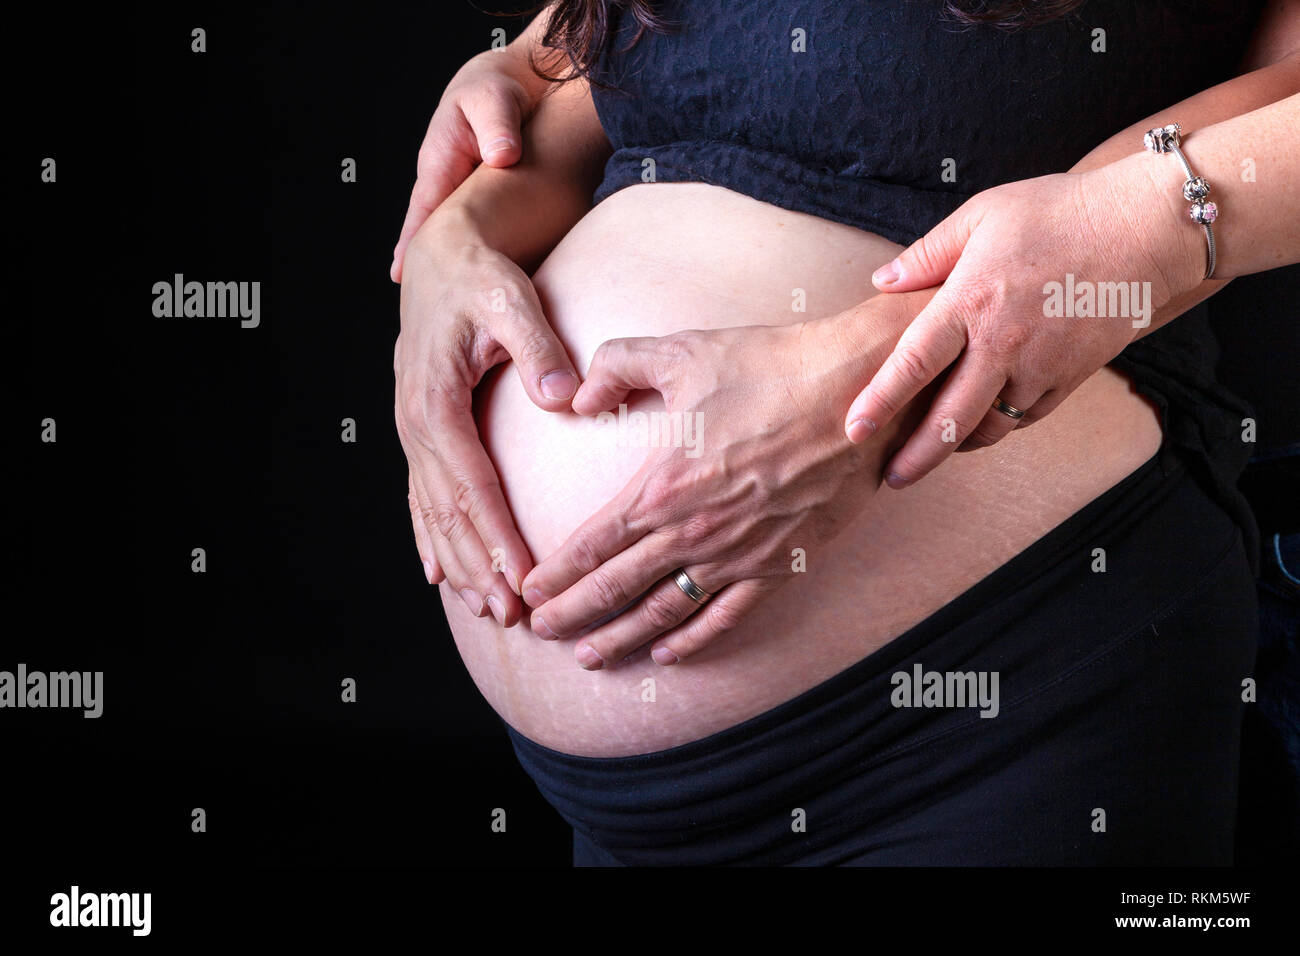 Donna incinta con il marito le mani sulla sua pancia nella forma di un cuore che simboleggia l'amore. Isolato su sfondo nero. Foto Stock